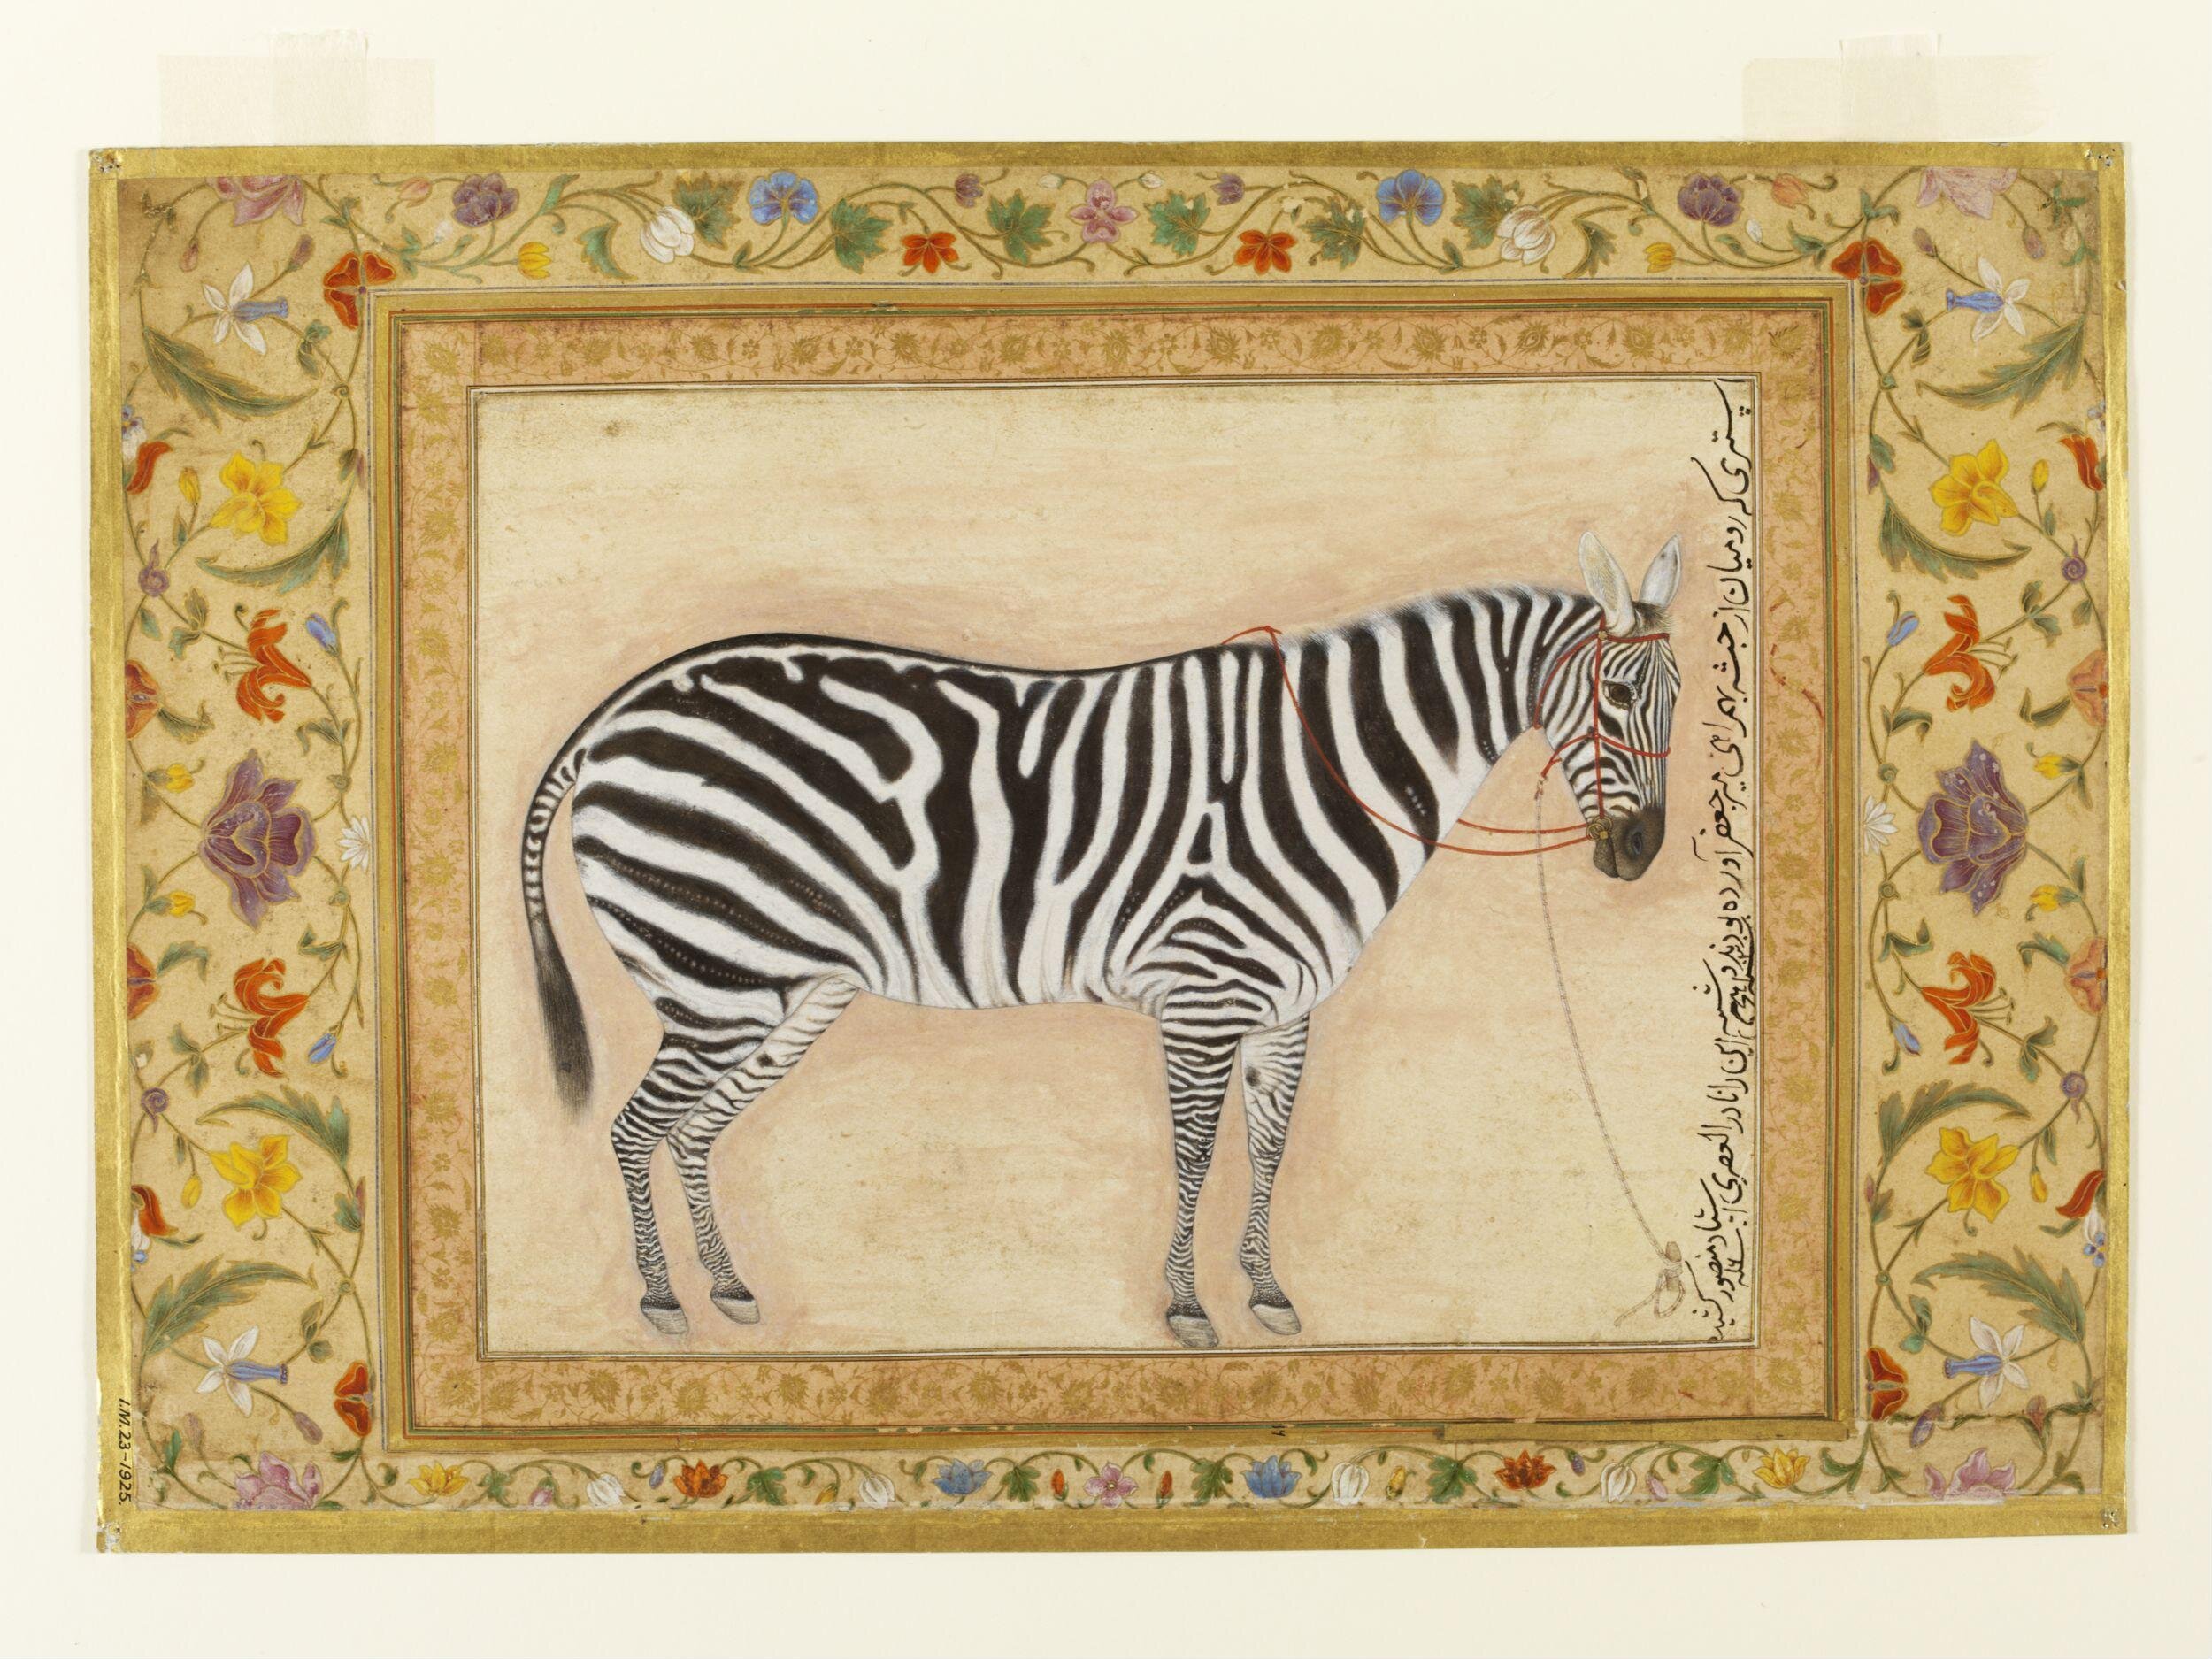 Zebra by Ustad Mansur - 1621 - 38,7 x 24cm 